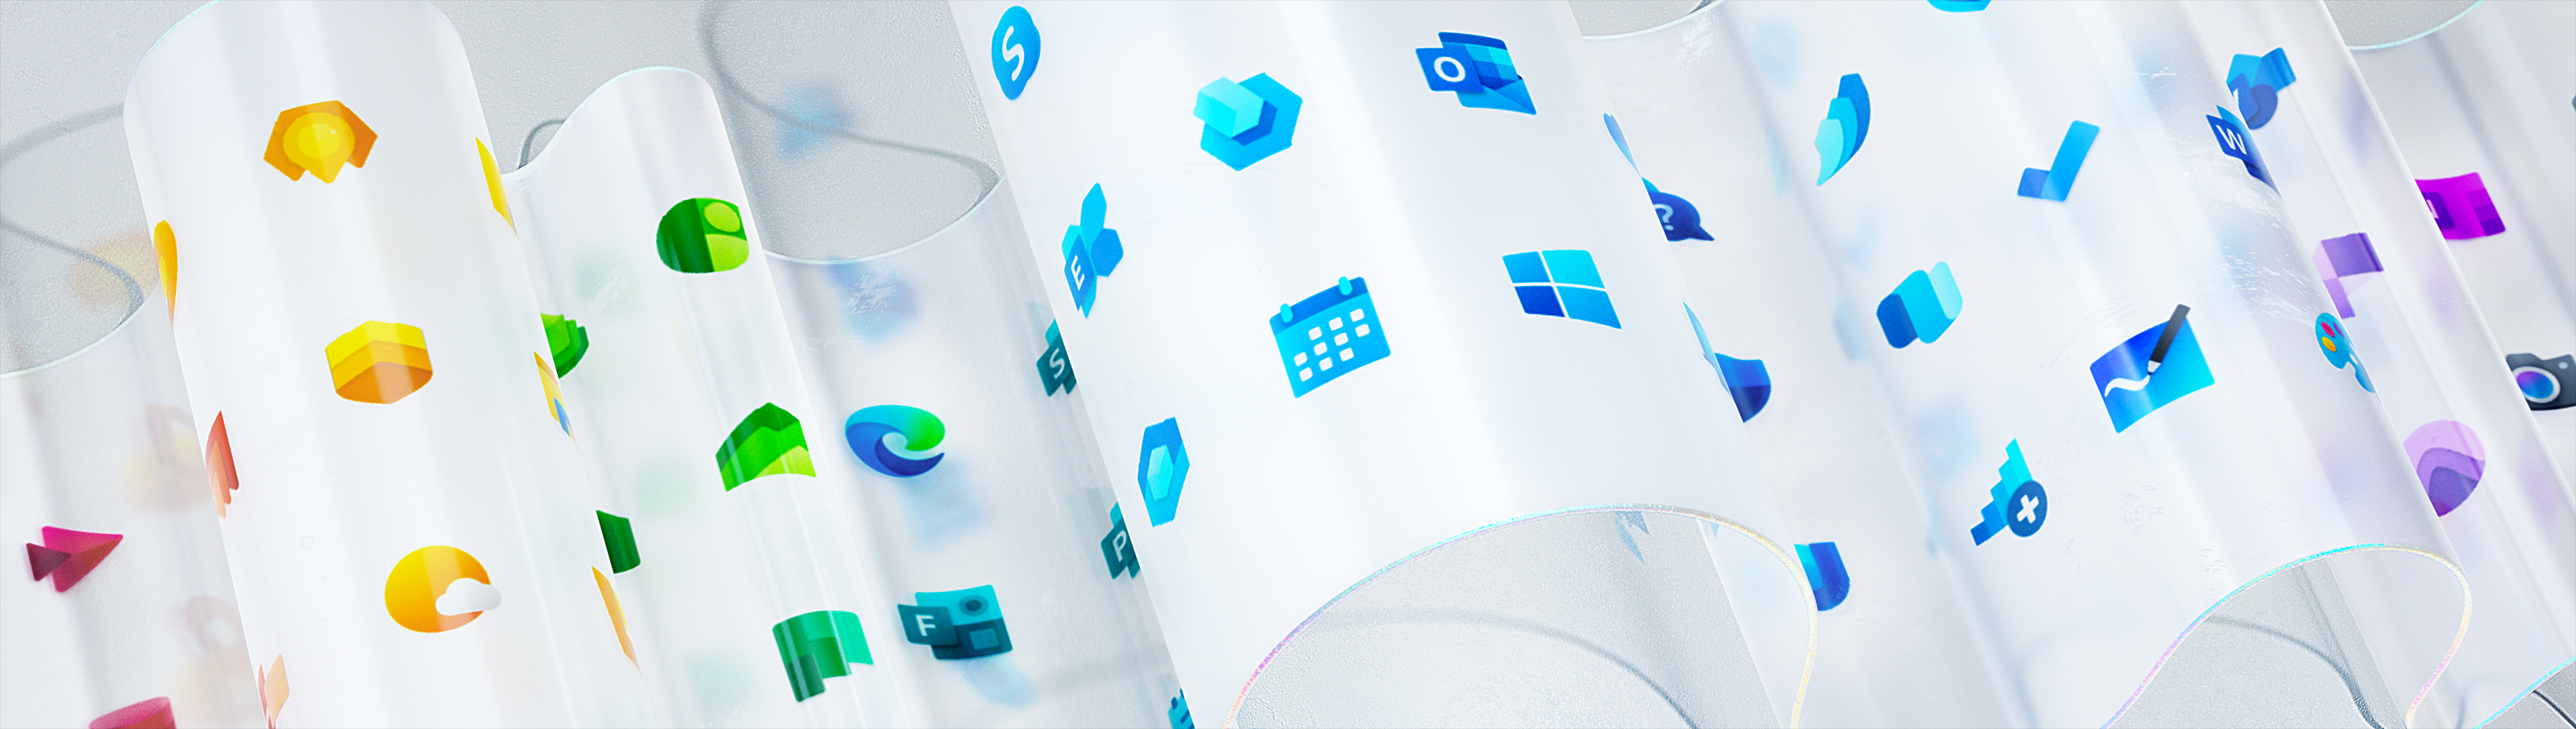 nowe logo Windows 10 Fluent Design Microsoft nowe ikony ikonki